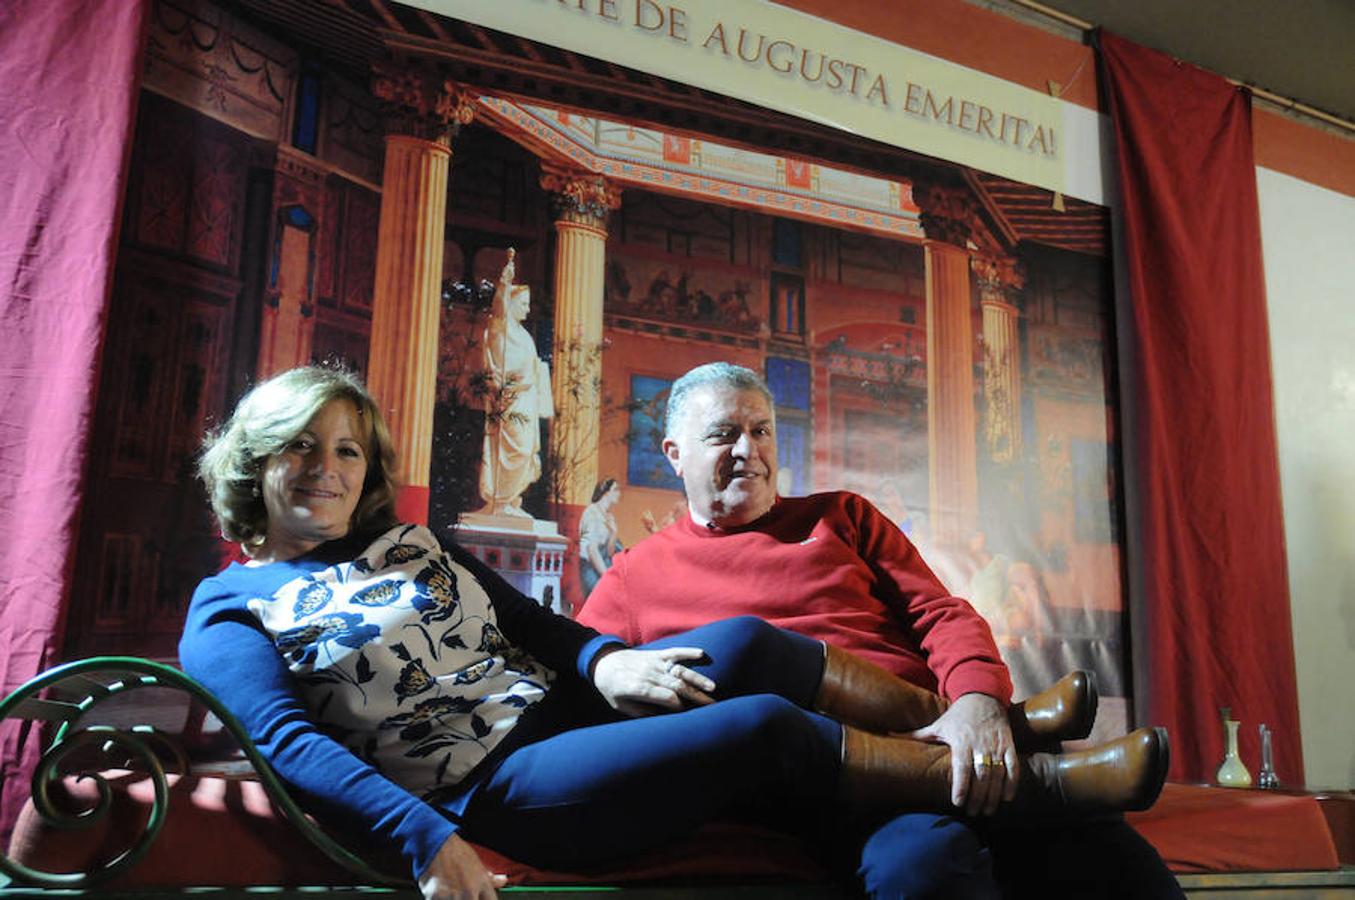 Participantes en la actividad &#039;¡Enamórate de Augusta Emerita!&#039;, celebrada en el Museo Romano